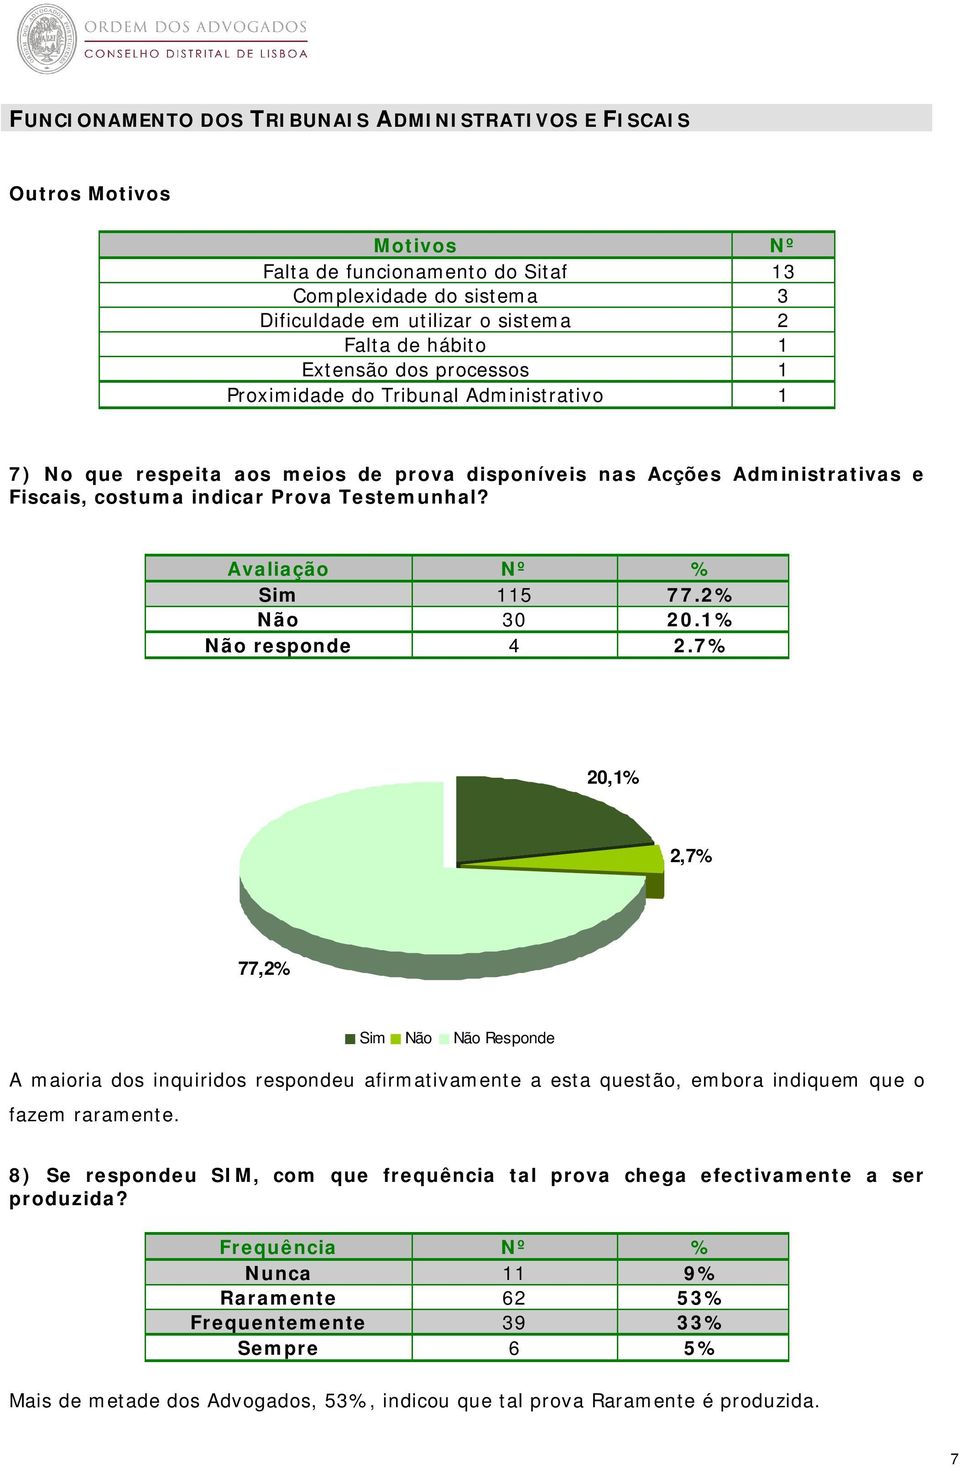 7% 20,1% 2,7% 77,2% Responde A maioria dos inquiridos respondeu afirmativamente a esta questão, embora indiquem que o fazem raramente.